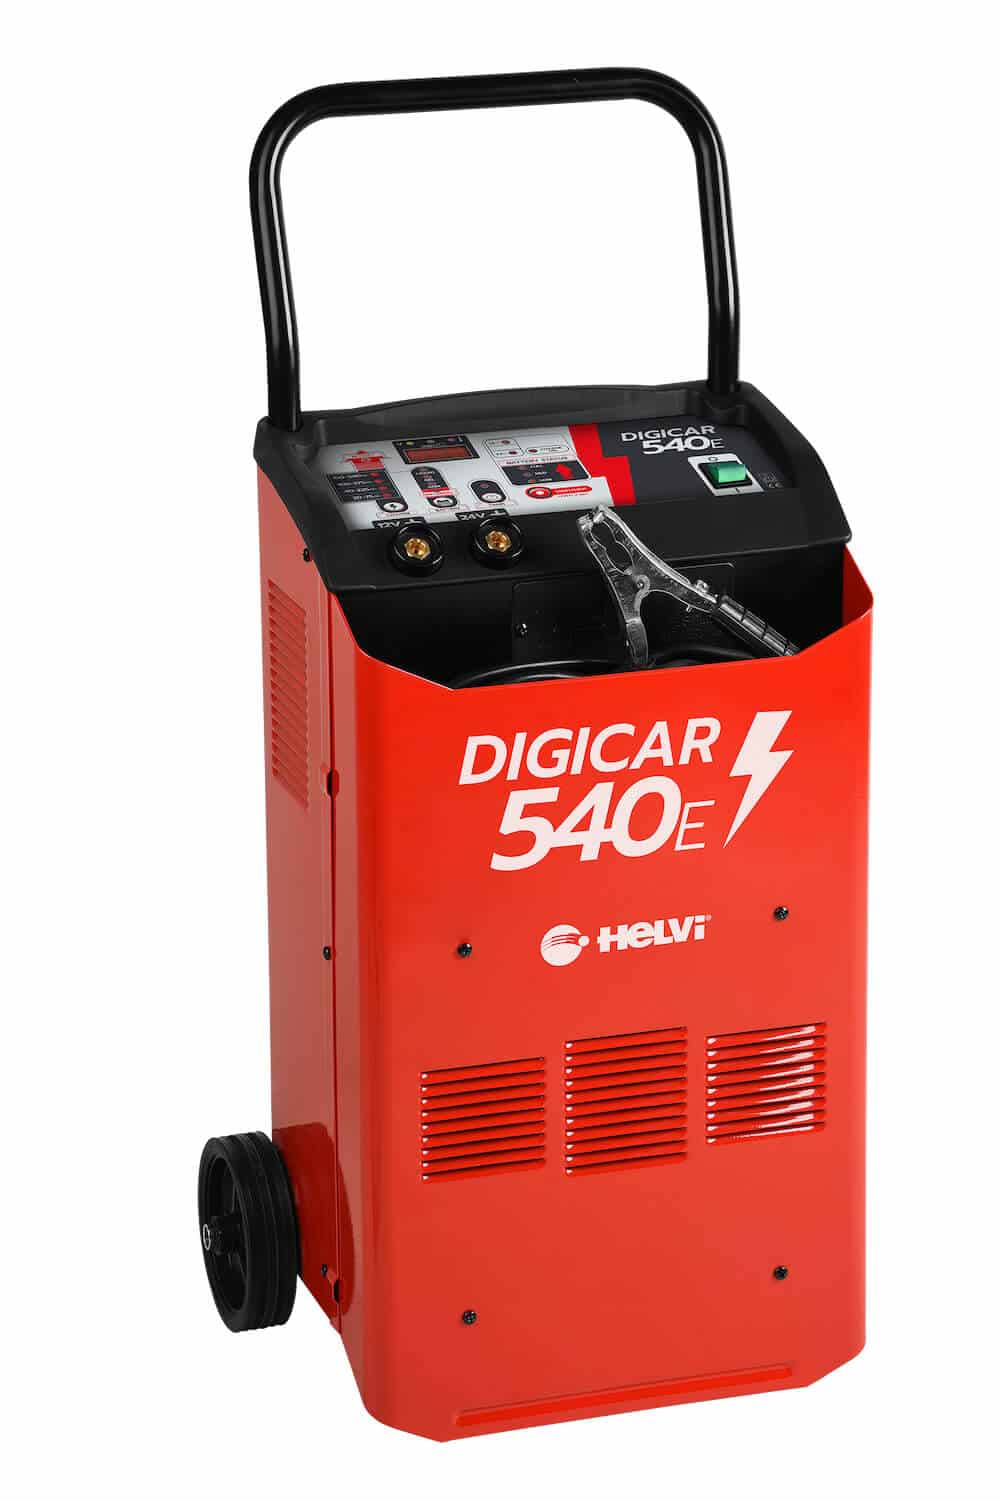 Batterieladegerät Digicar 540 E/1 günstig kaufen ᐅ Unisales GmbH